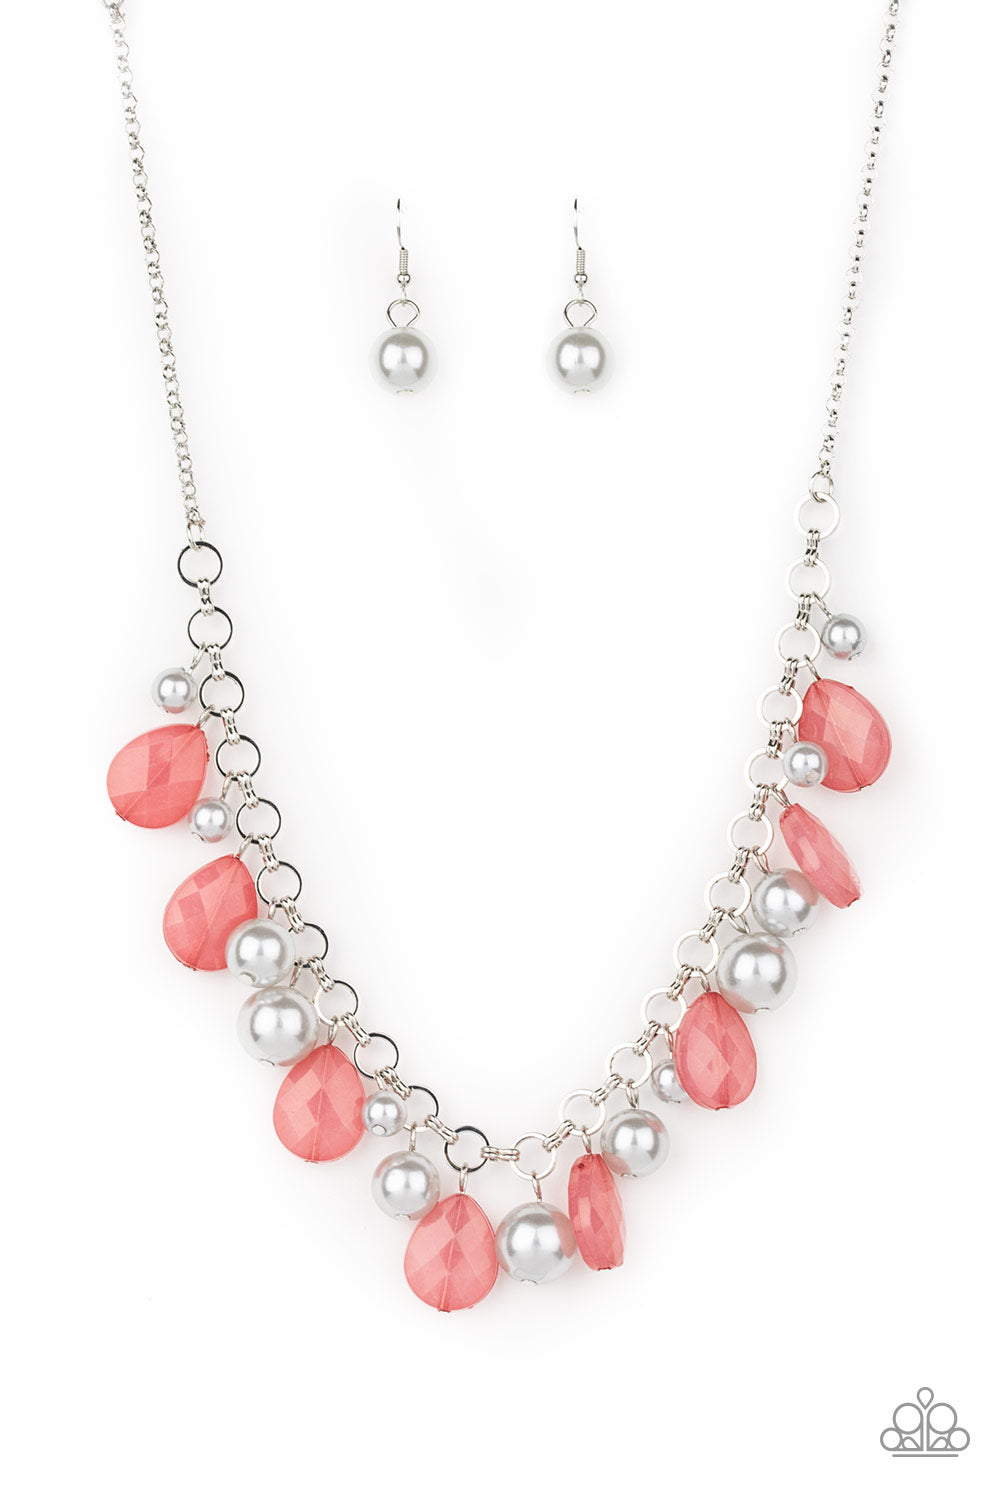 Pacific Posh Multi Paparazzi Necklaces Cashmere Pink Jewels - Cashmere Pink Jewels & Accessories, Cashmere Pink Jewels & Accessories - Paparazzi